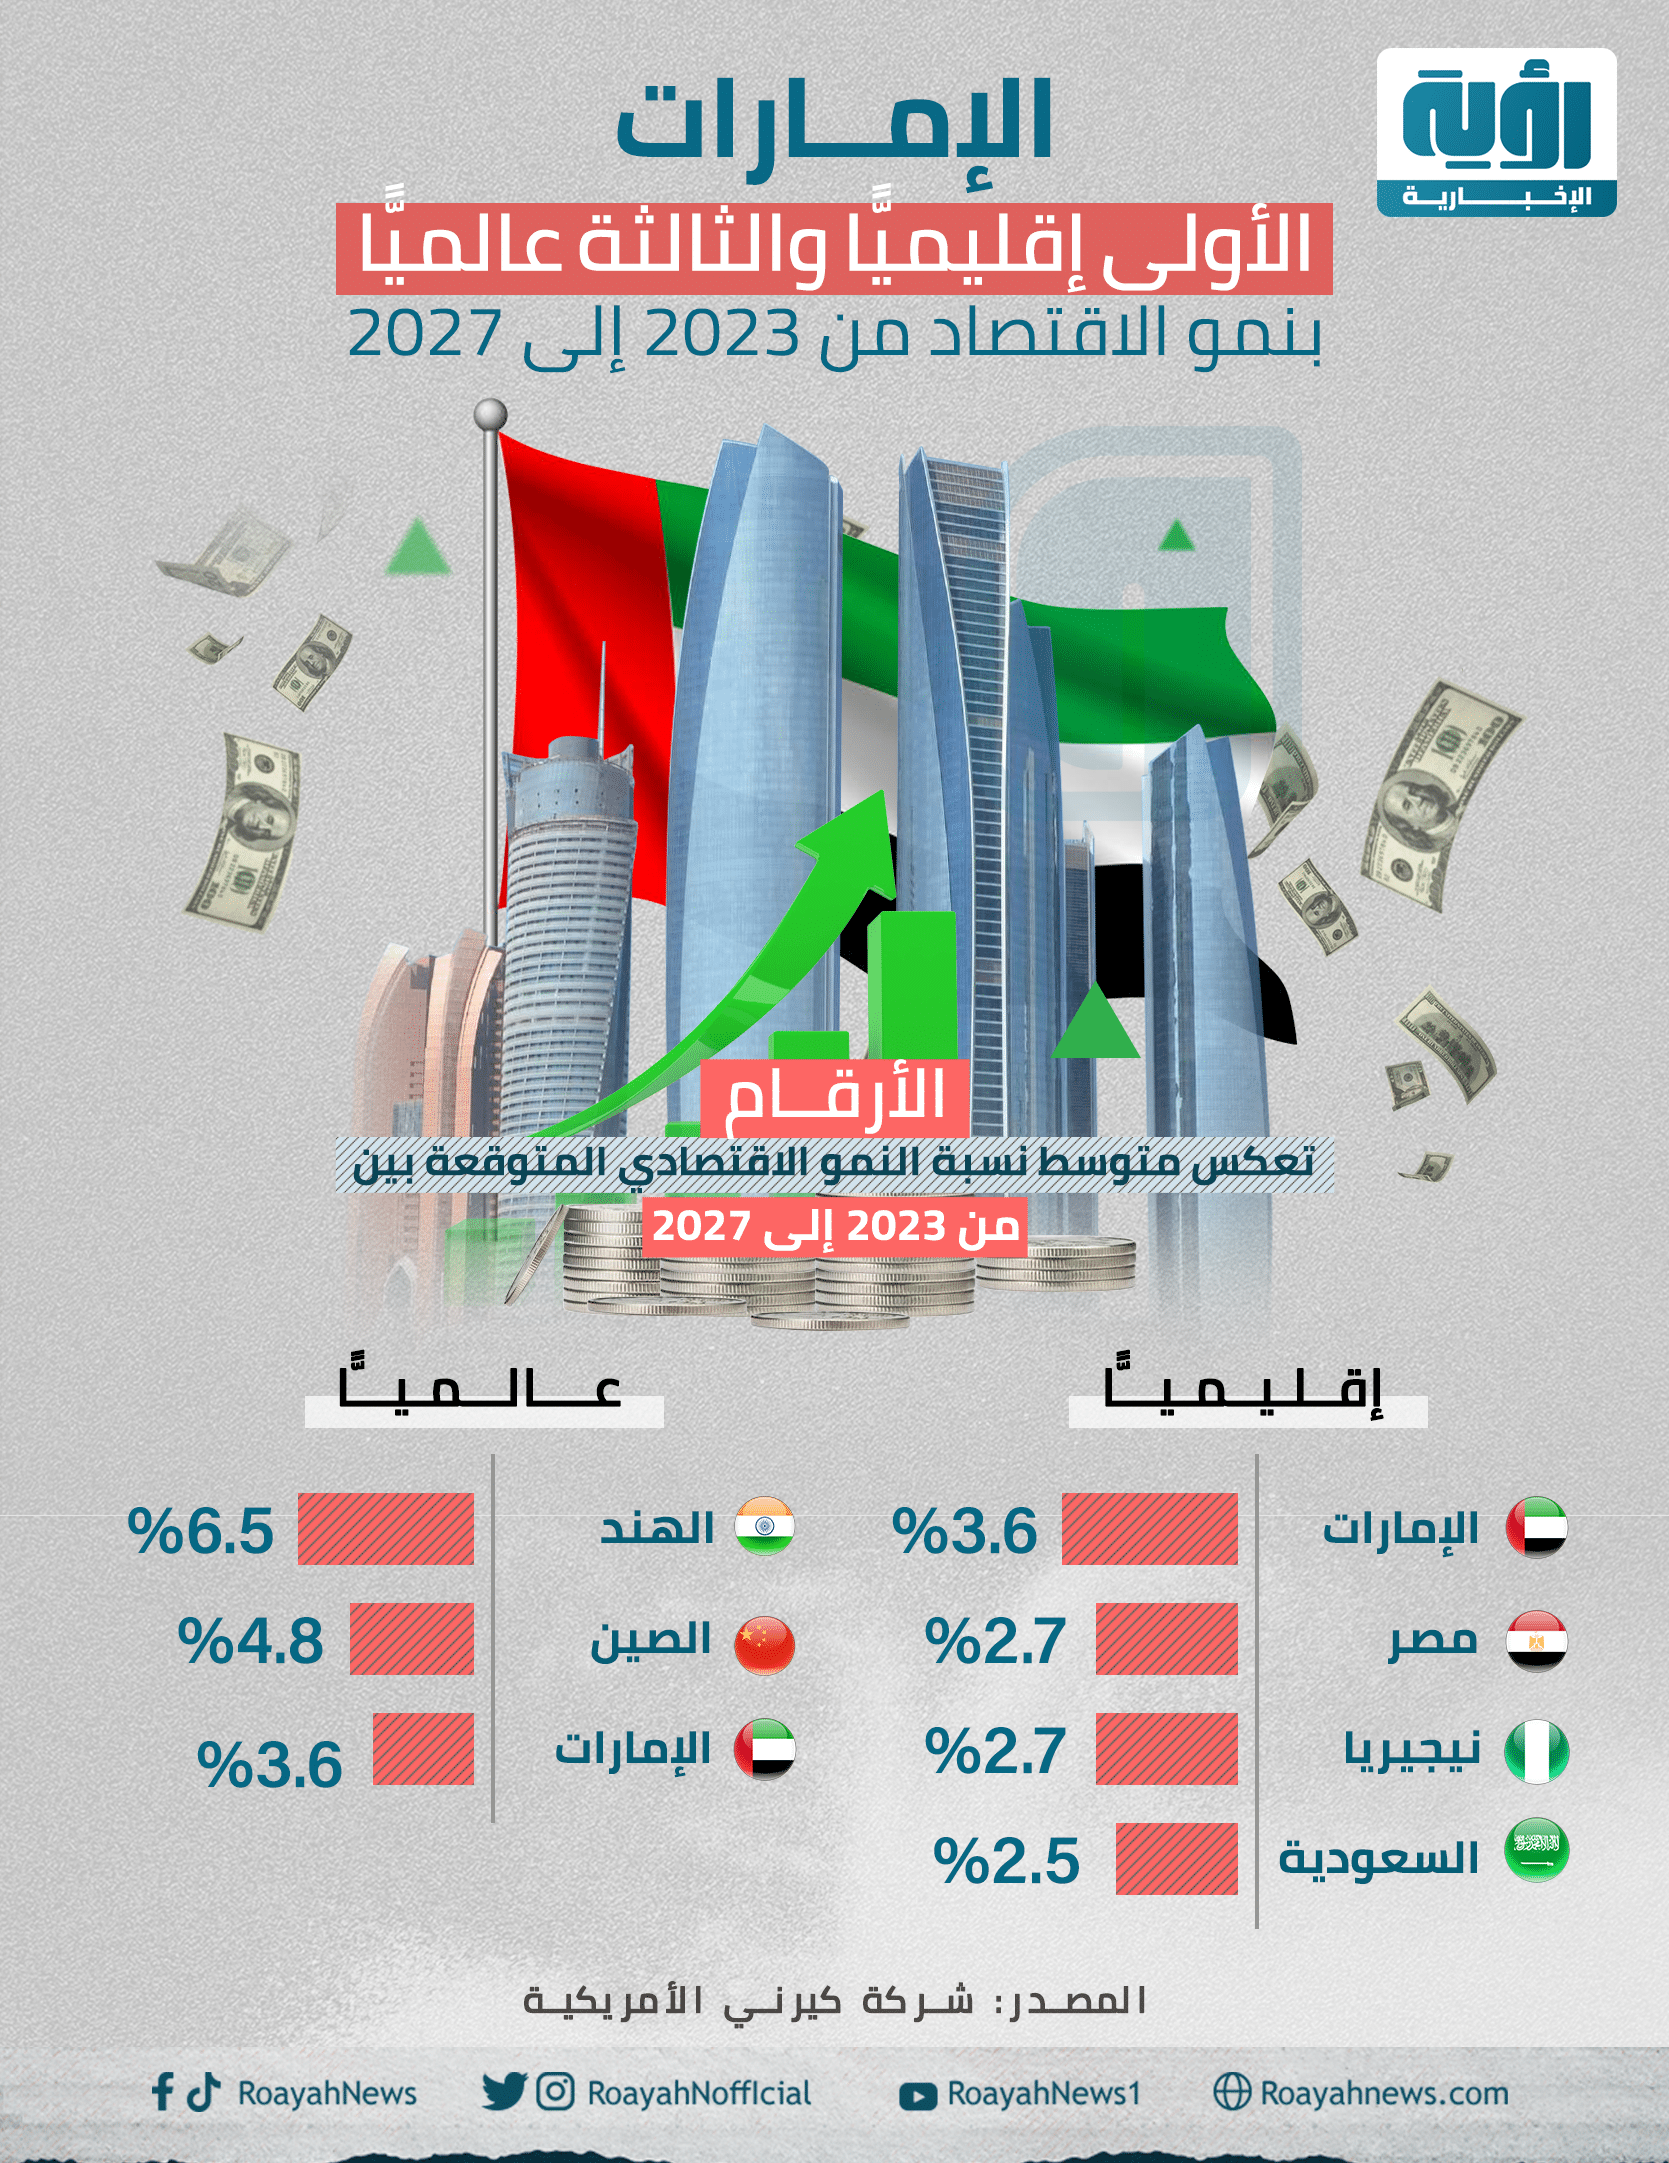 الإمارات الأولى إقليميًّا والثالثة عالميًّا بنمو الاقتصاد 1